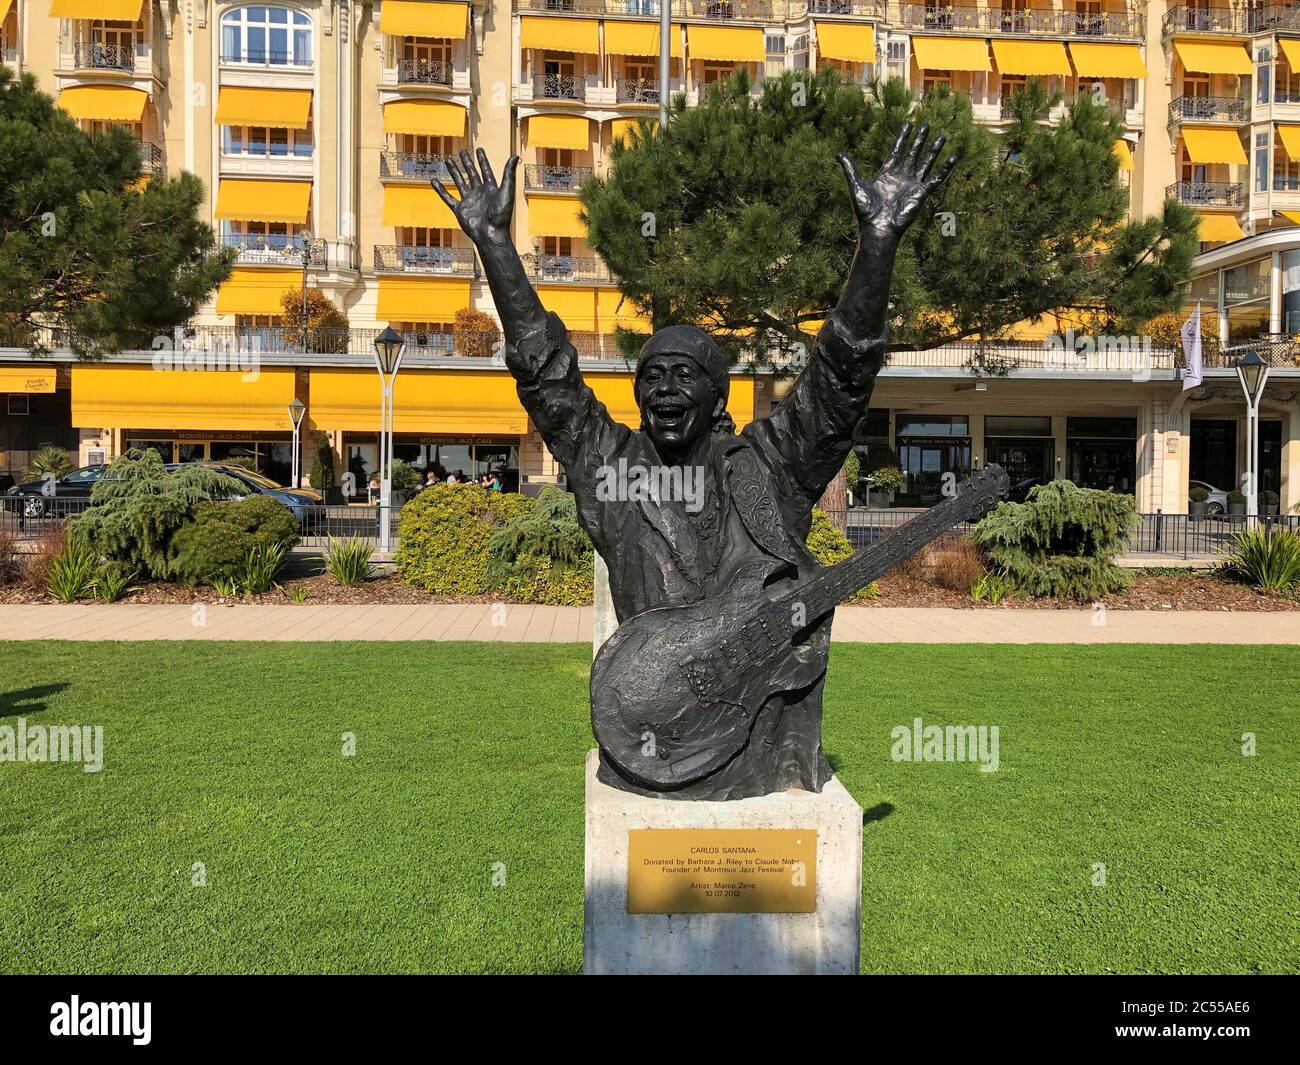 Statue de Carlos Santana dans un parc de Montreux Suisse Banque D'Images